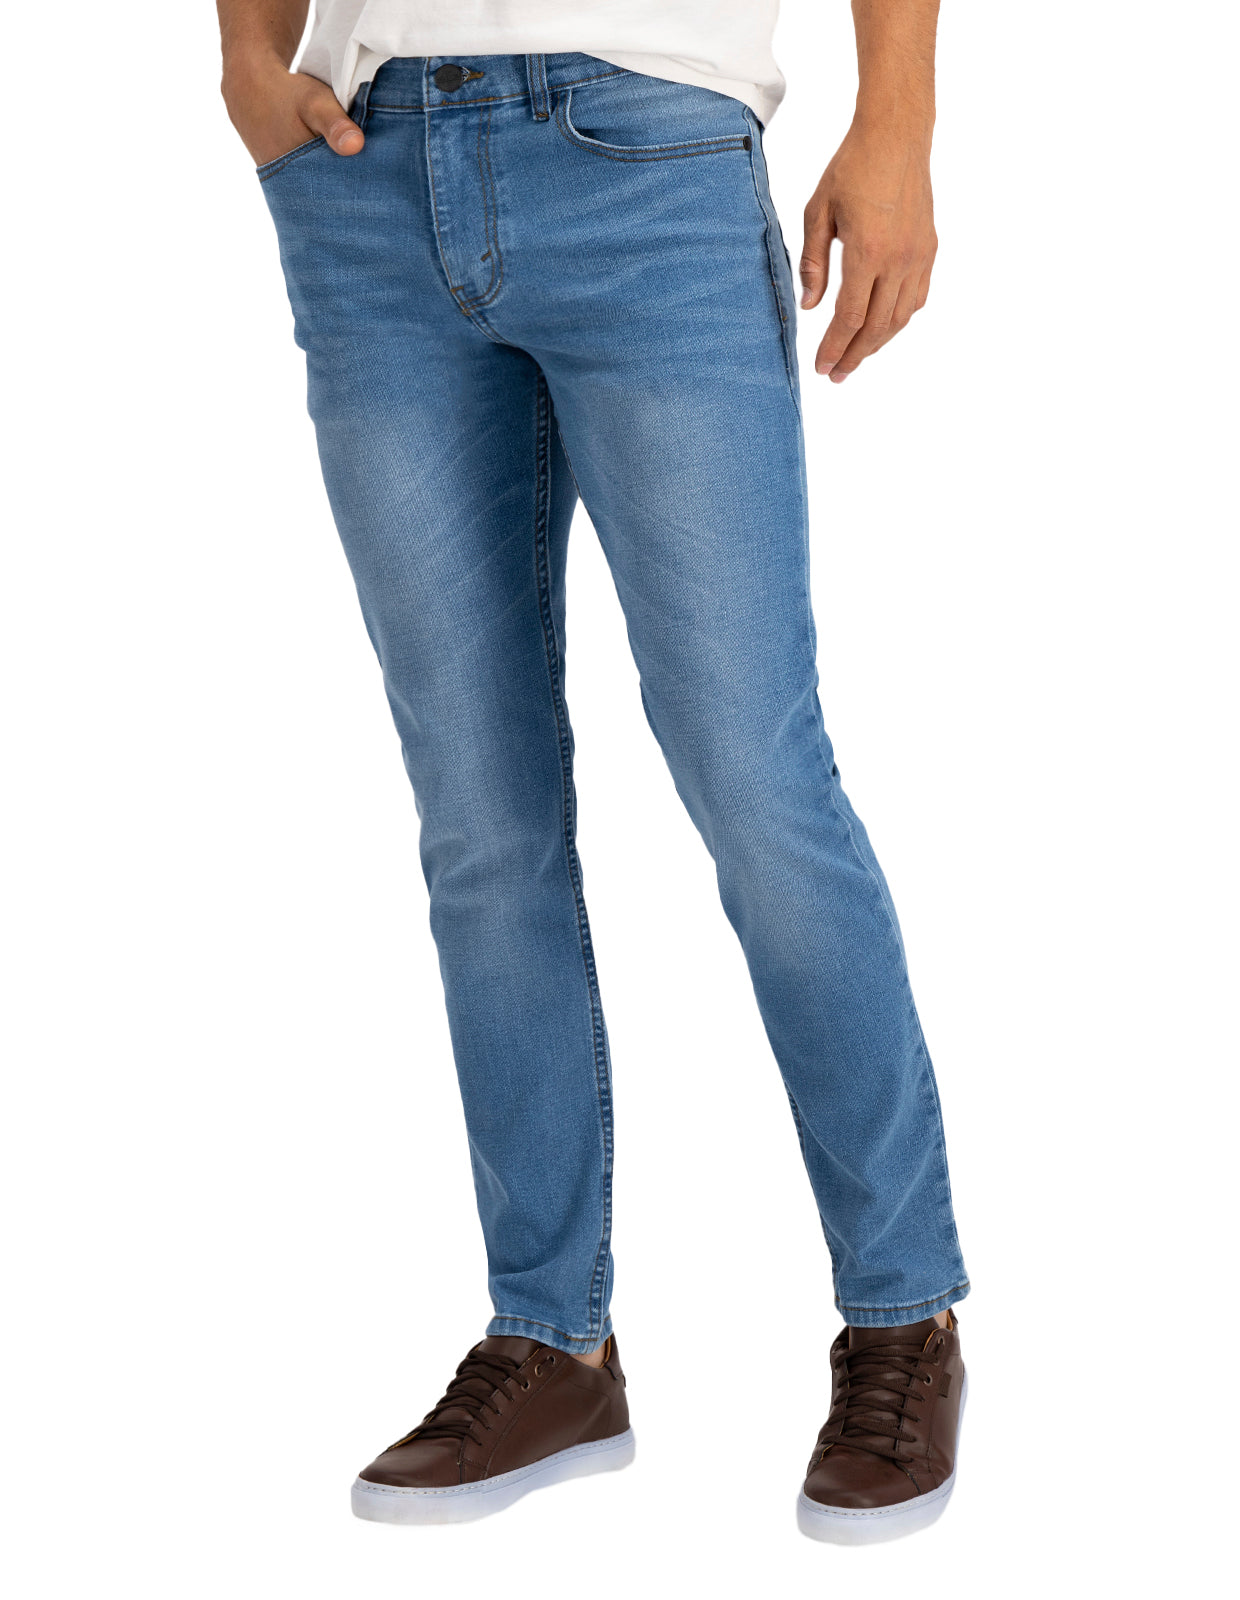 Jeans de Mezclilla Premium Slim Fit - Pekín